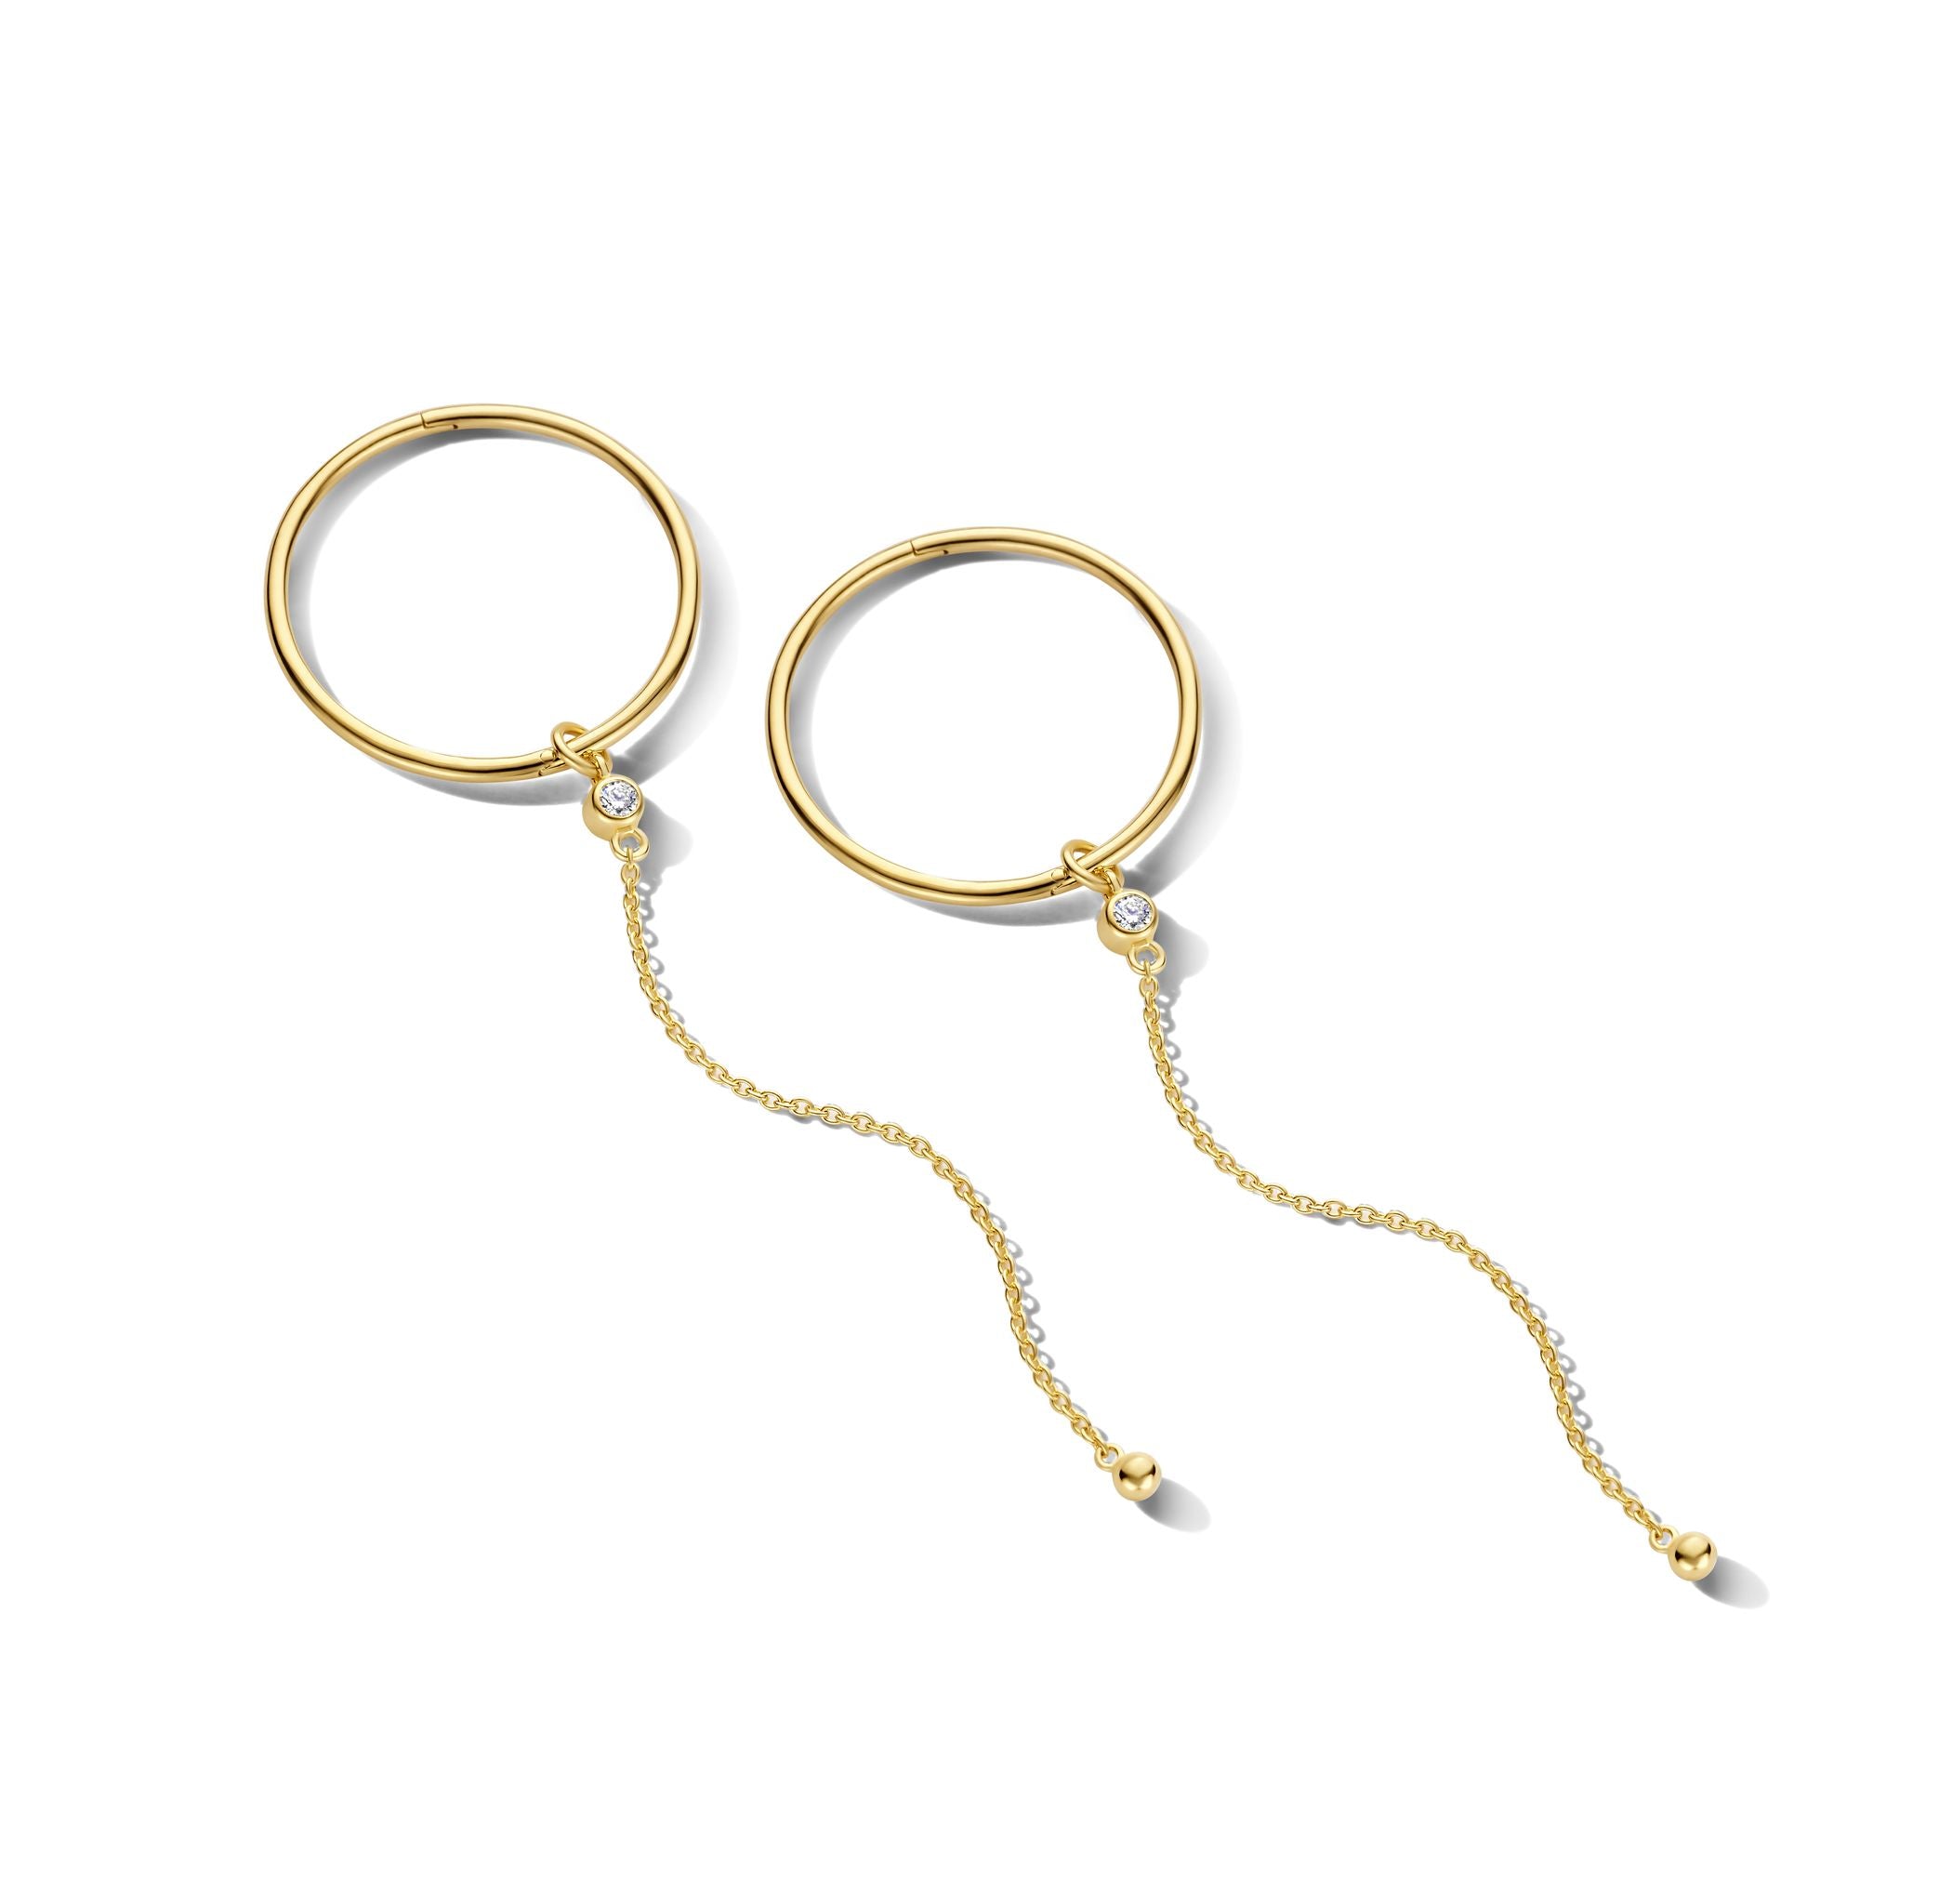 Imagine hoop øreringe uden vedhæng - medium diameter 2 cm - 14 kt. guld-6